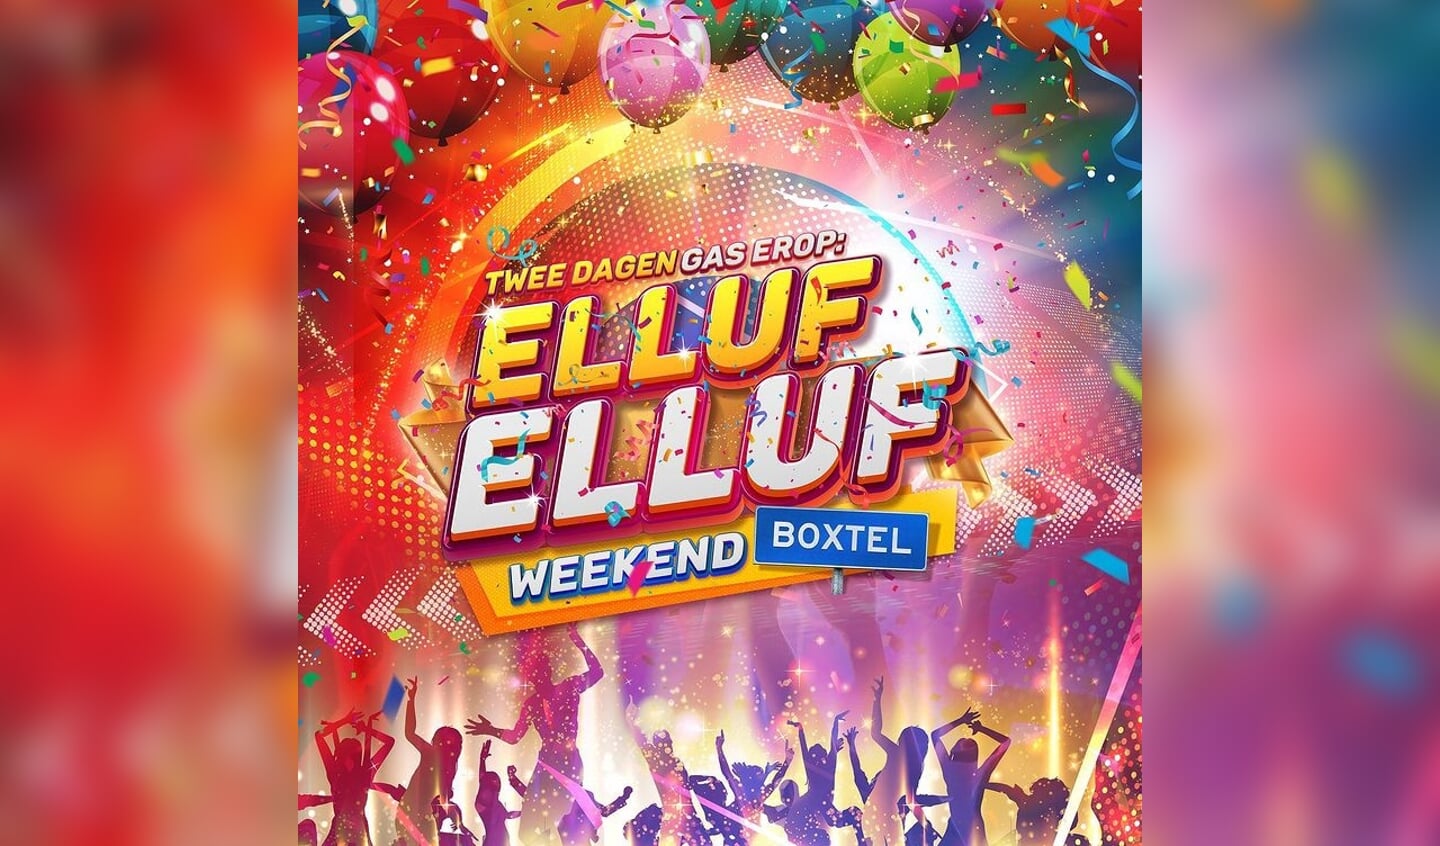 De poster van Elluf Elluf Weekend Boxtel, waarvoor de huisstijl ontworpen is door Boxtelaar Rob Housen. (Foto: Elluf Elluf Weekend Boxtel)